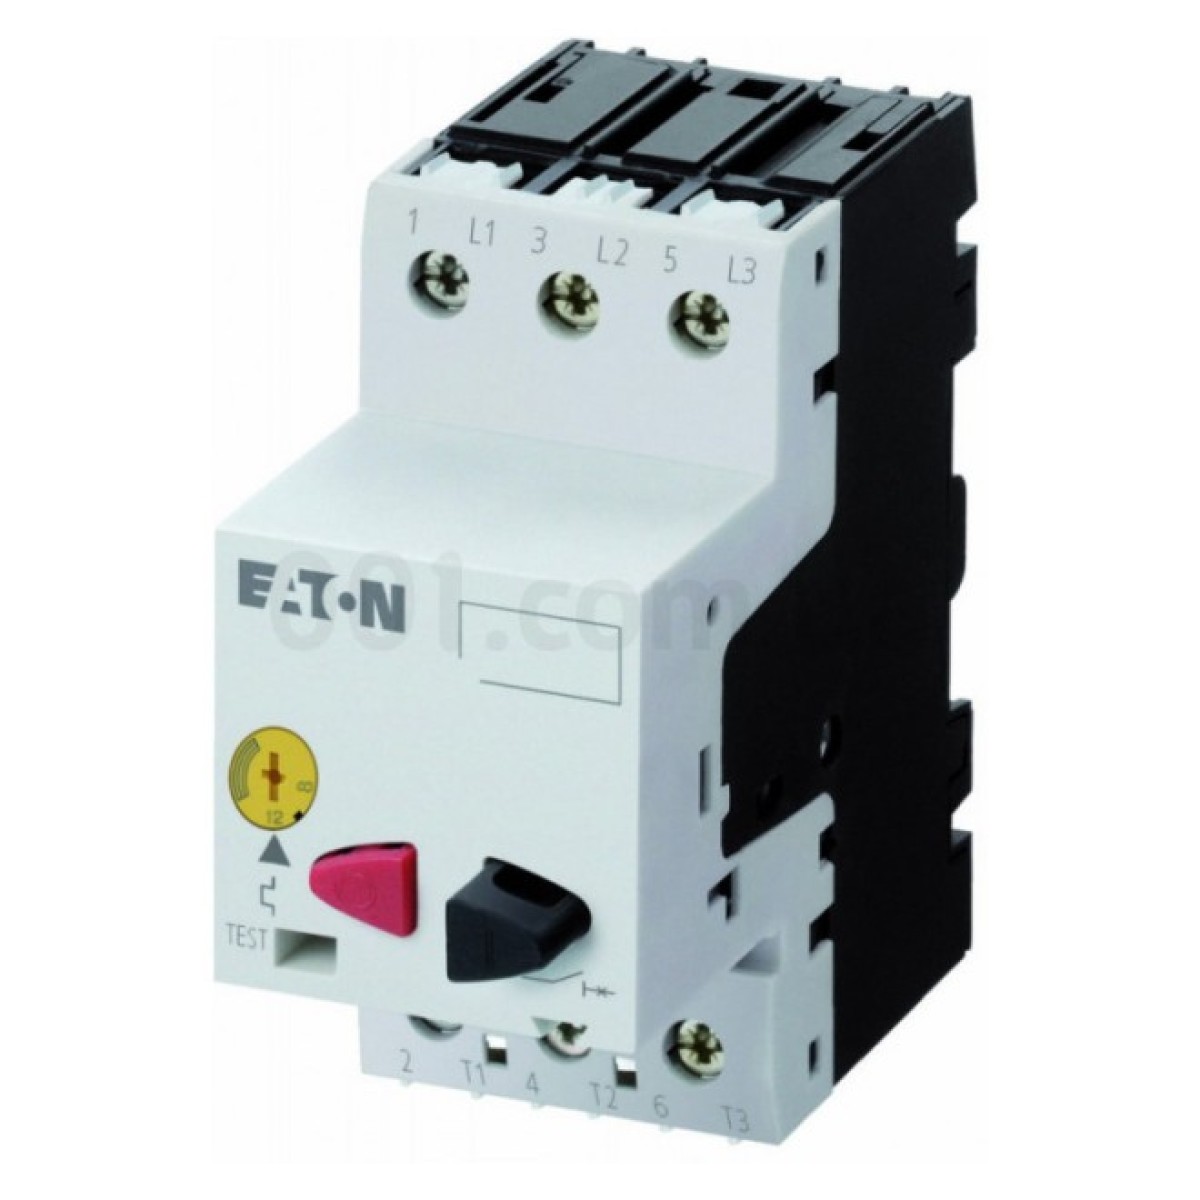 Автоматический выключатель защиты двигателя PKZM01-12 Ir=8...12А, Eaton (Moeller) 256_256.jpg